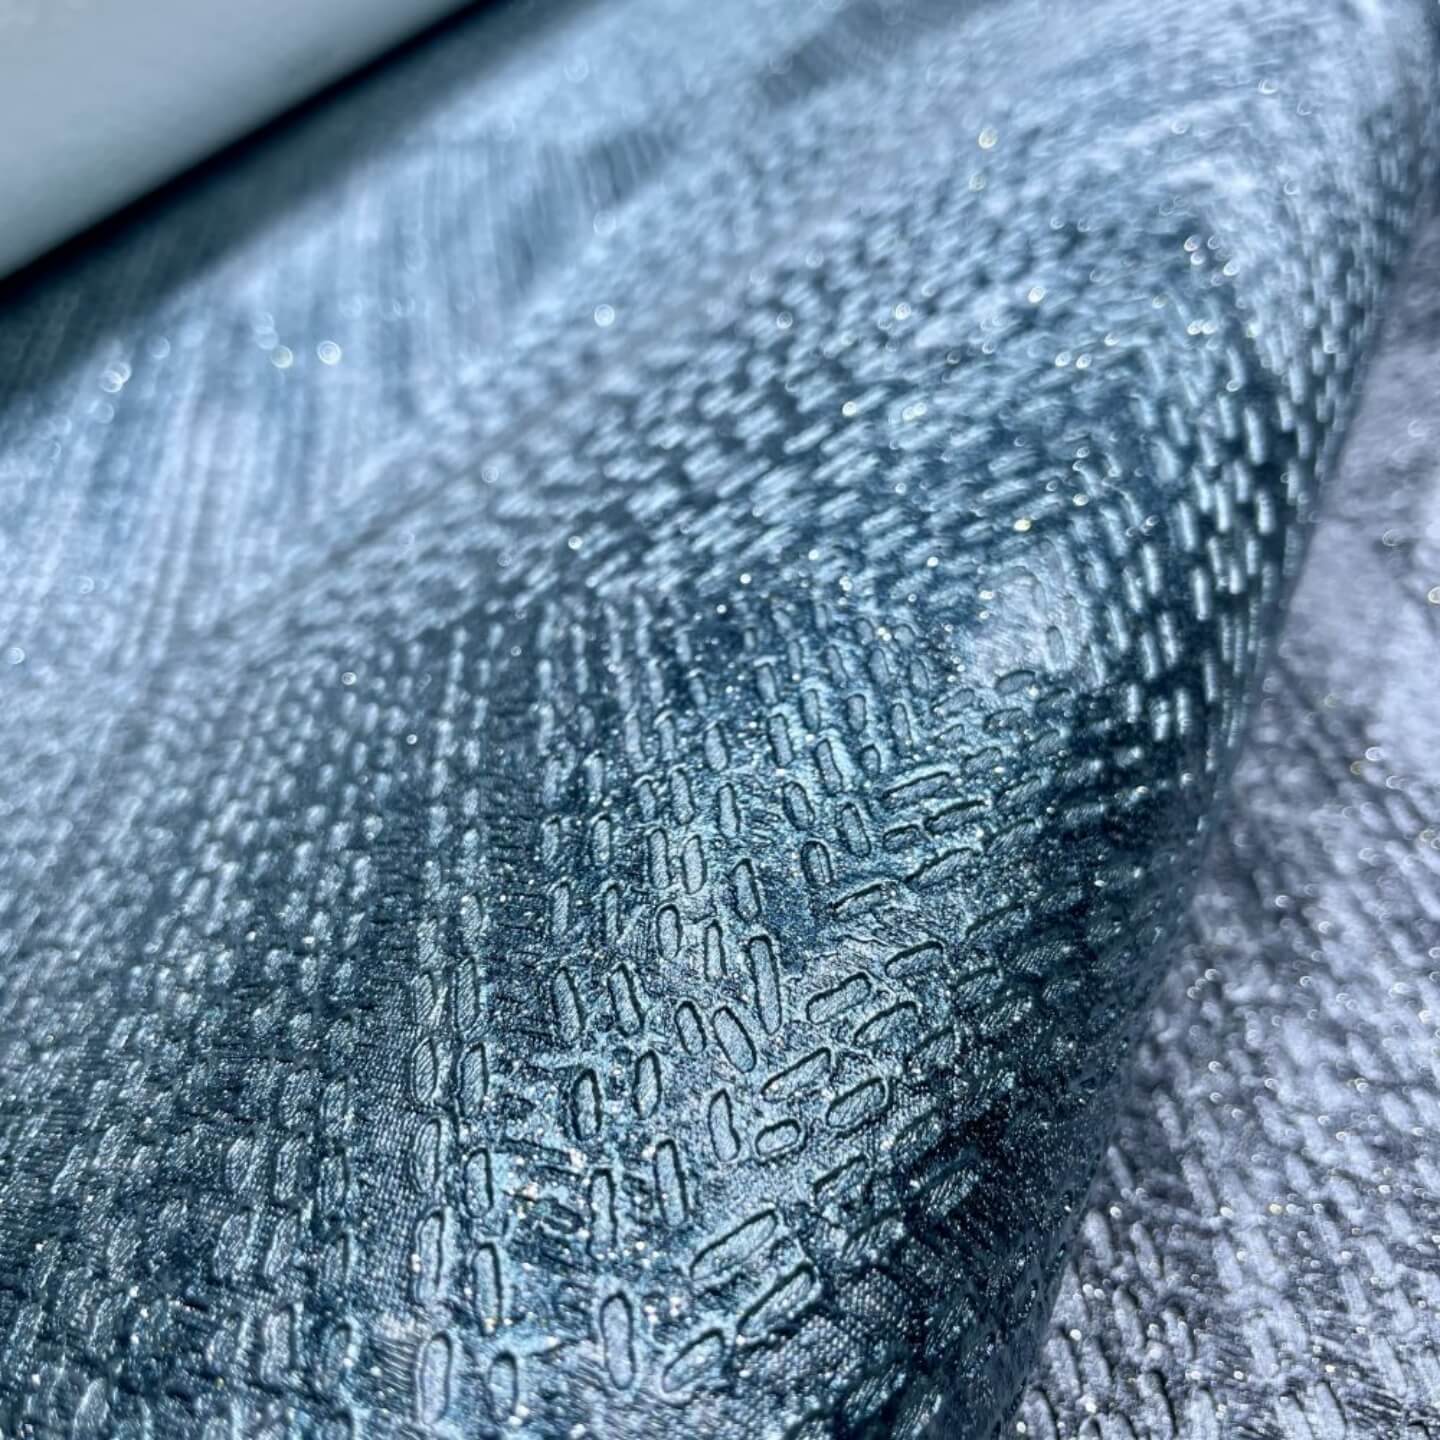 Papel de parede metálico em cinza frio com prata metálica